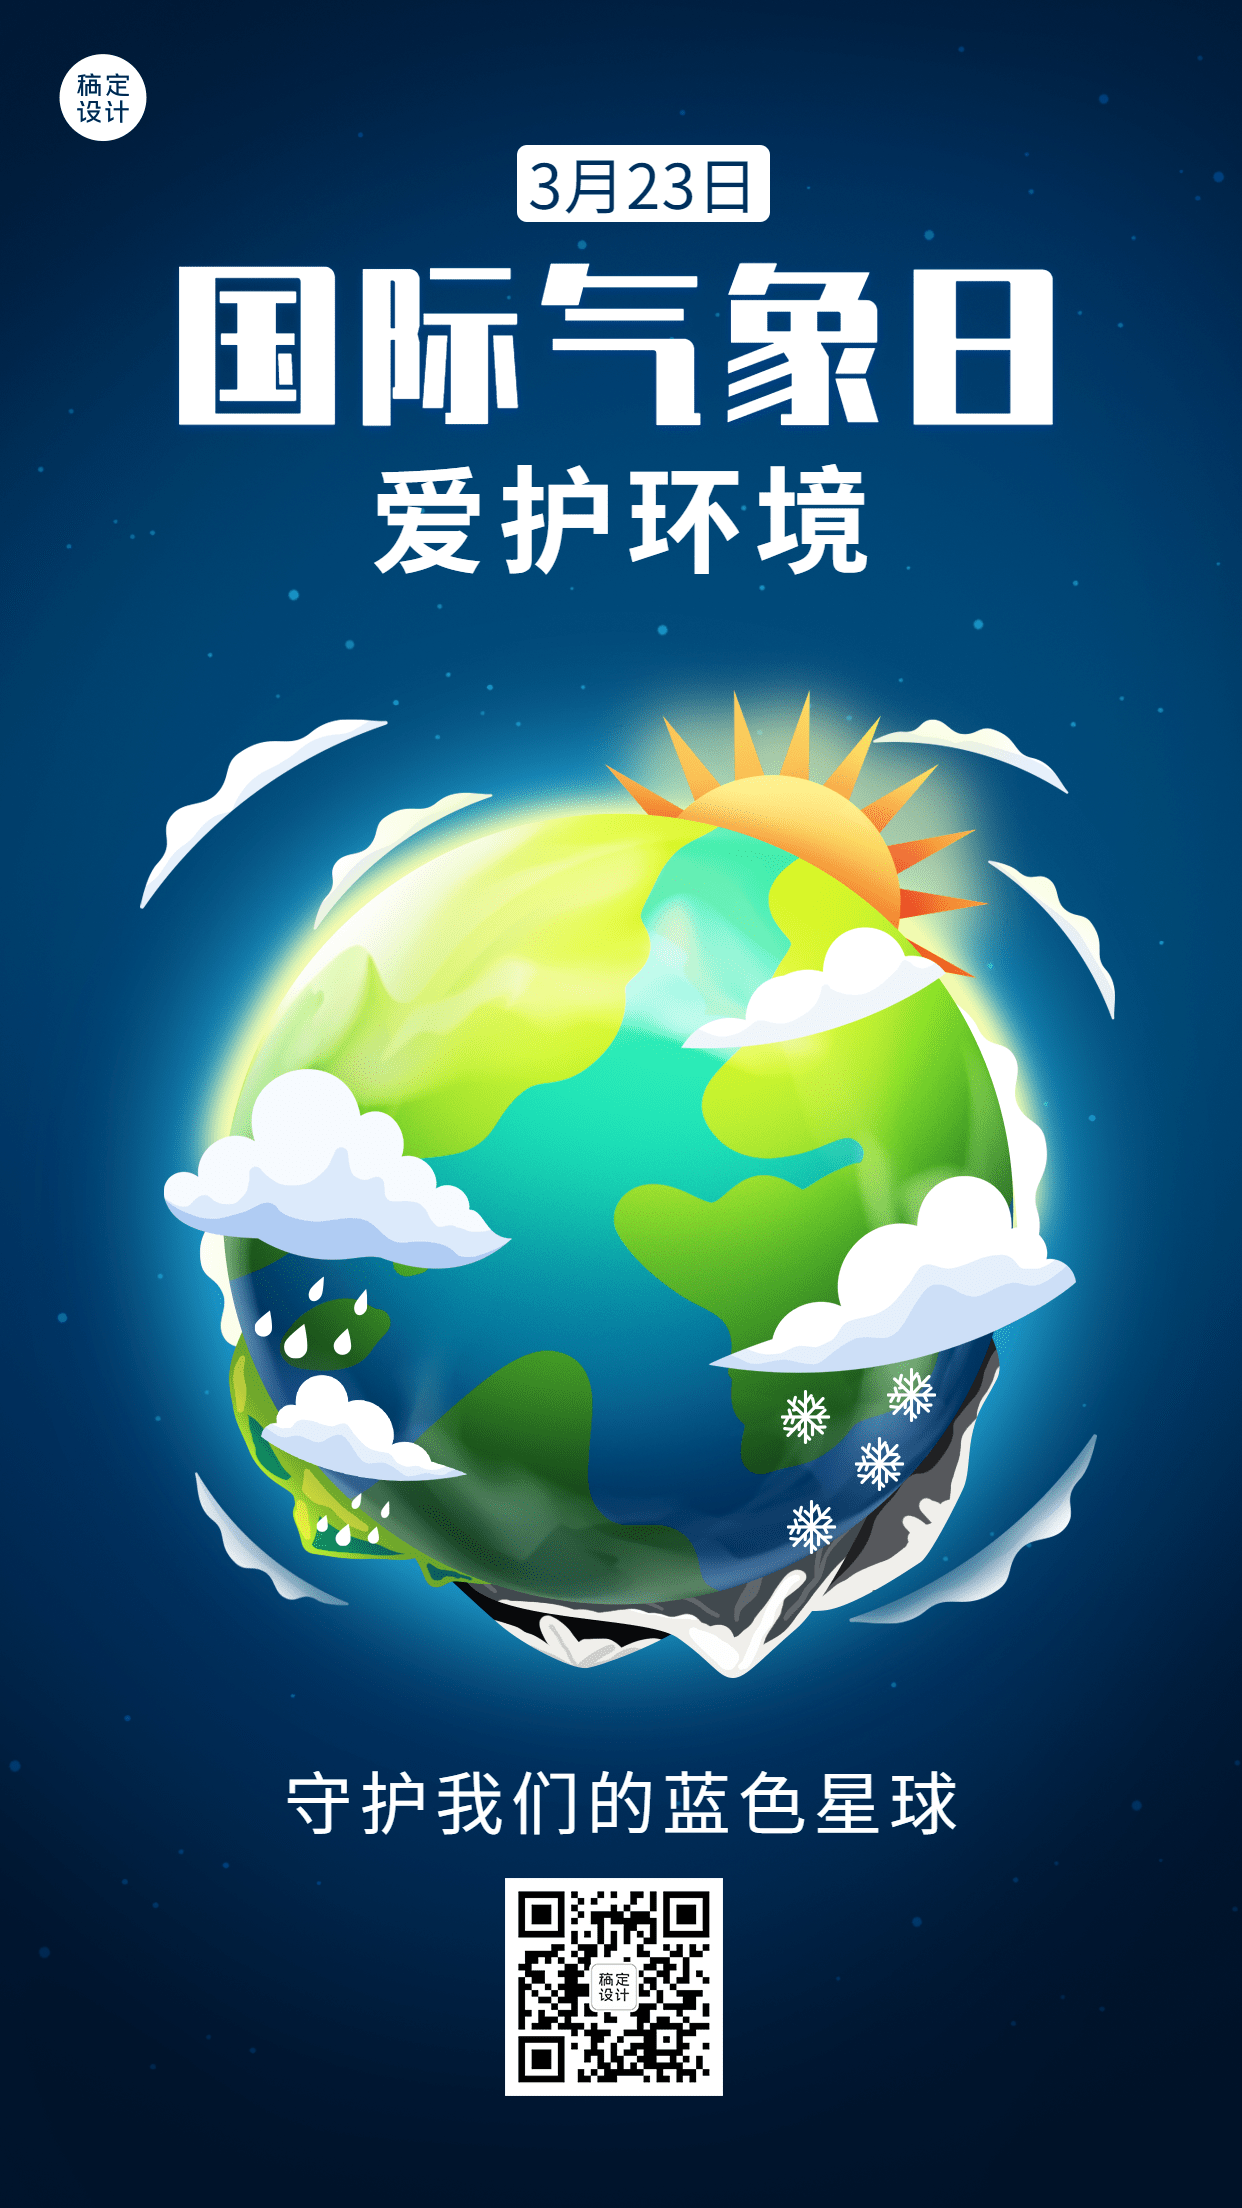 世界气象日节日宣传插画手机海报